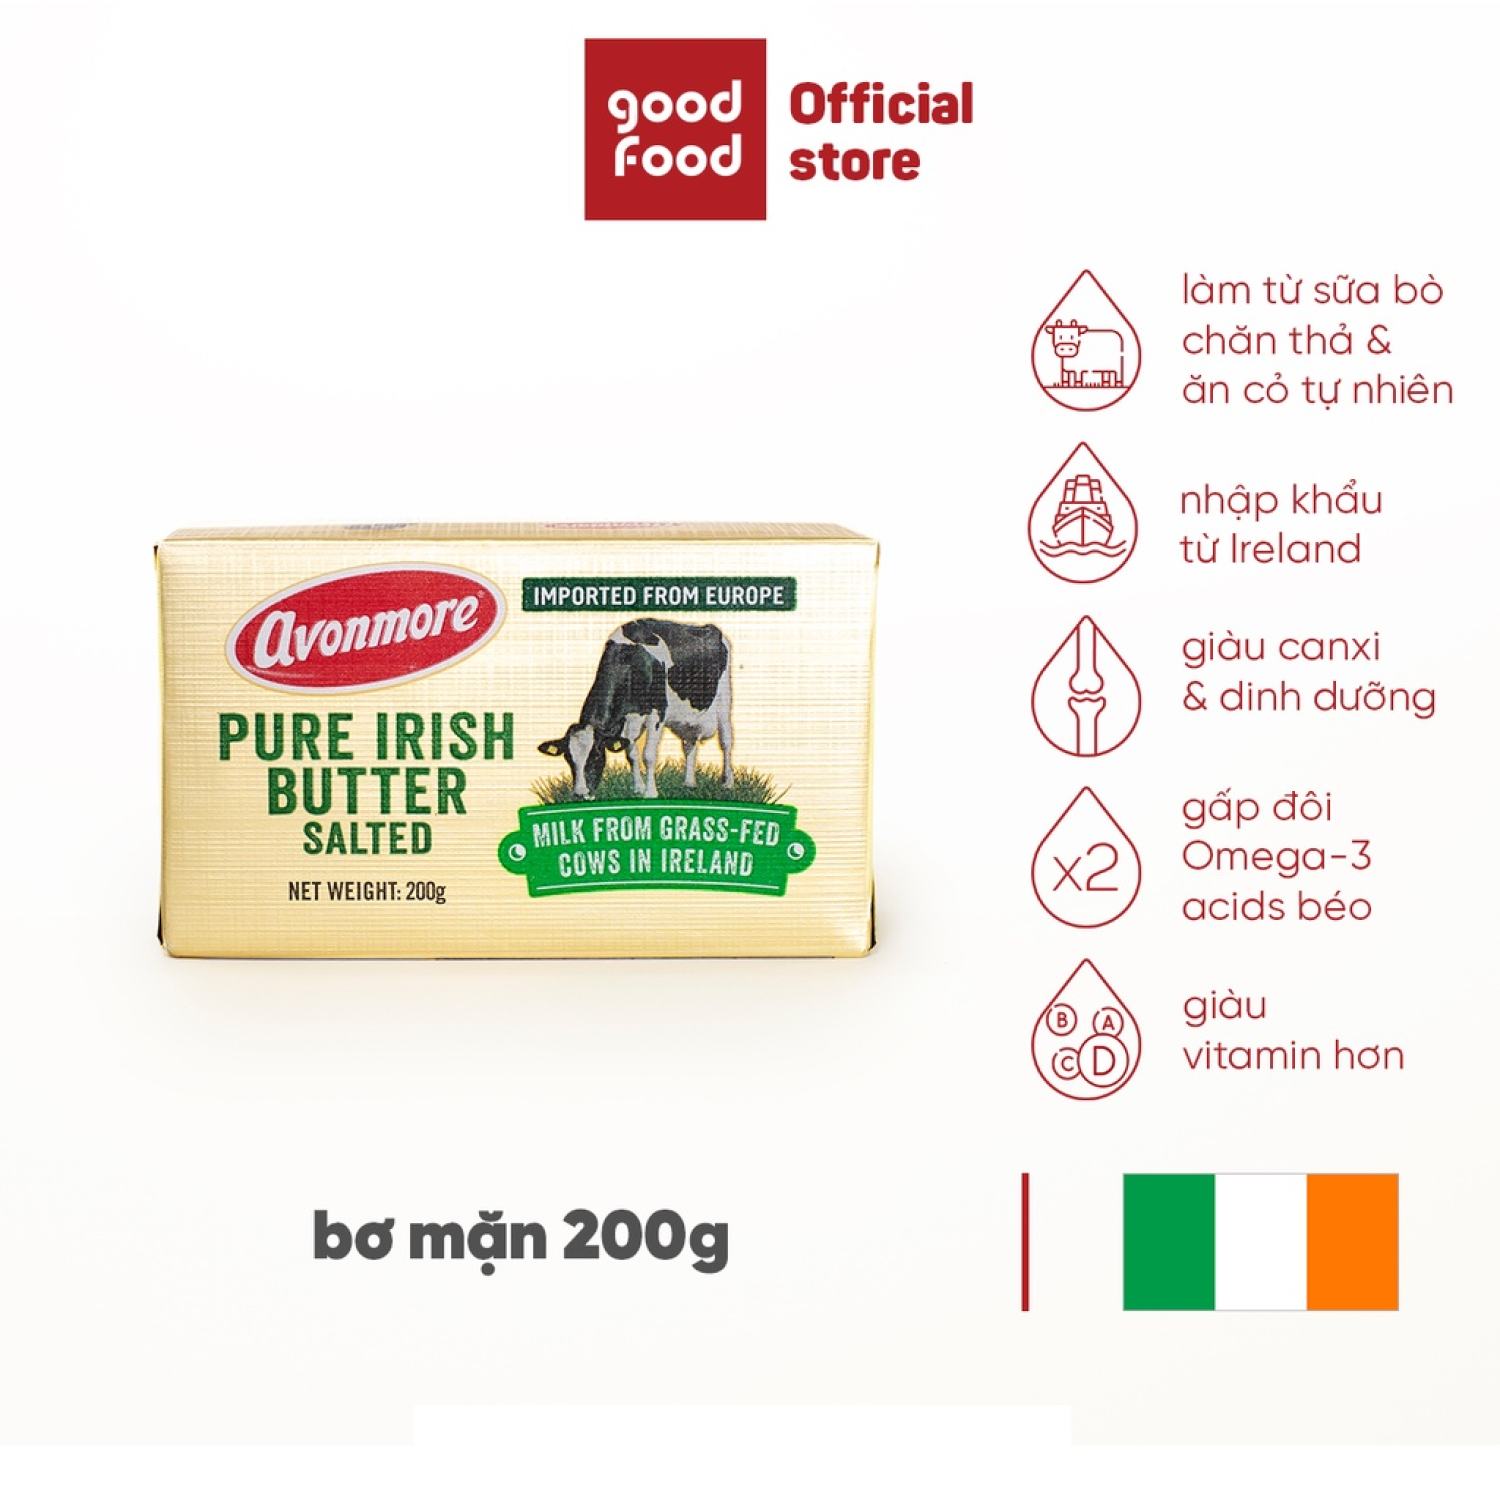 Bơ Mặn Avonmore Pure Irish Butter Salted 200g nhập khẩu trực tiếp từ